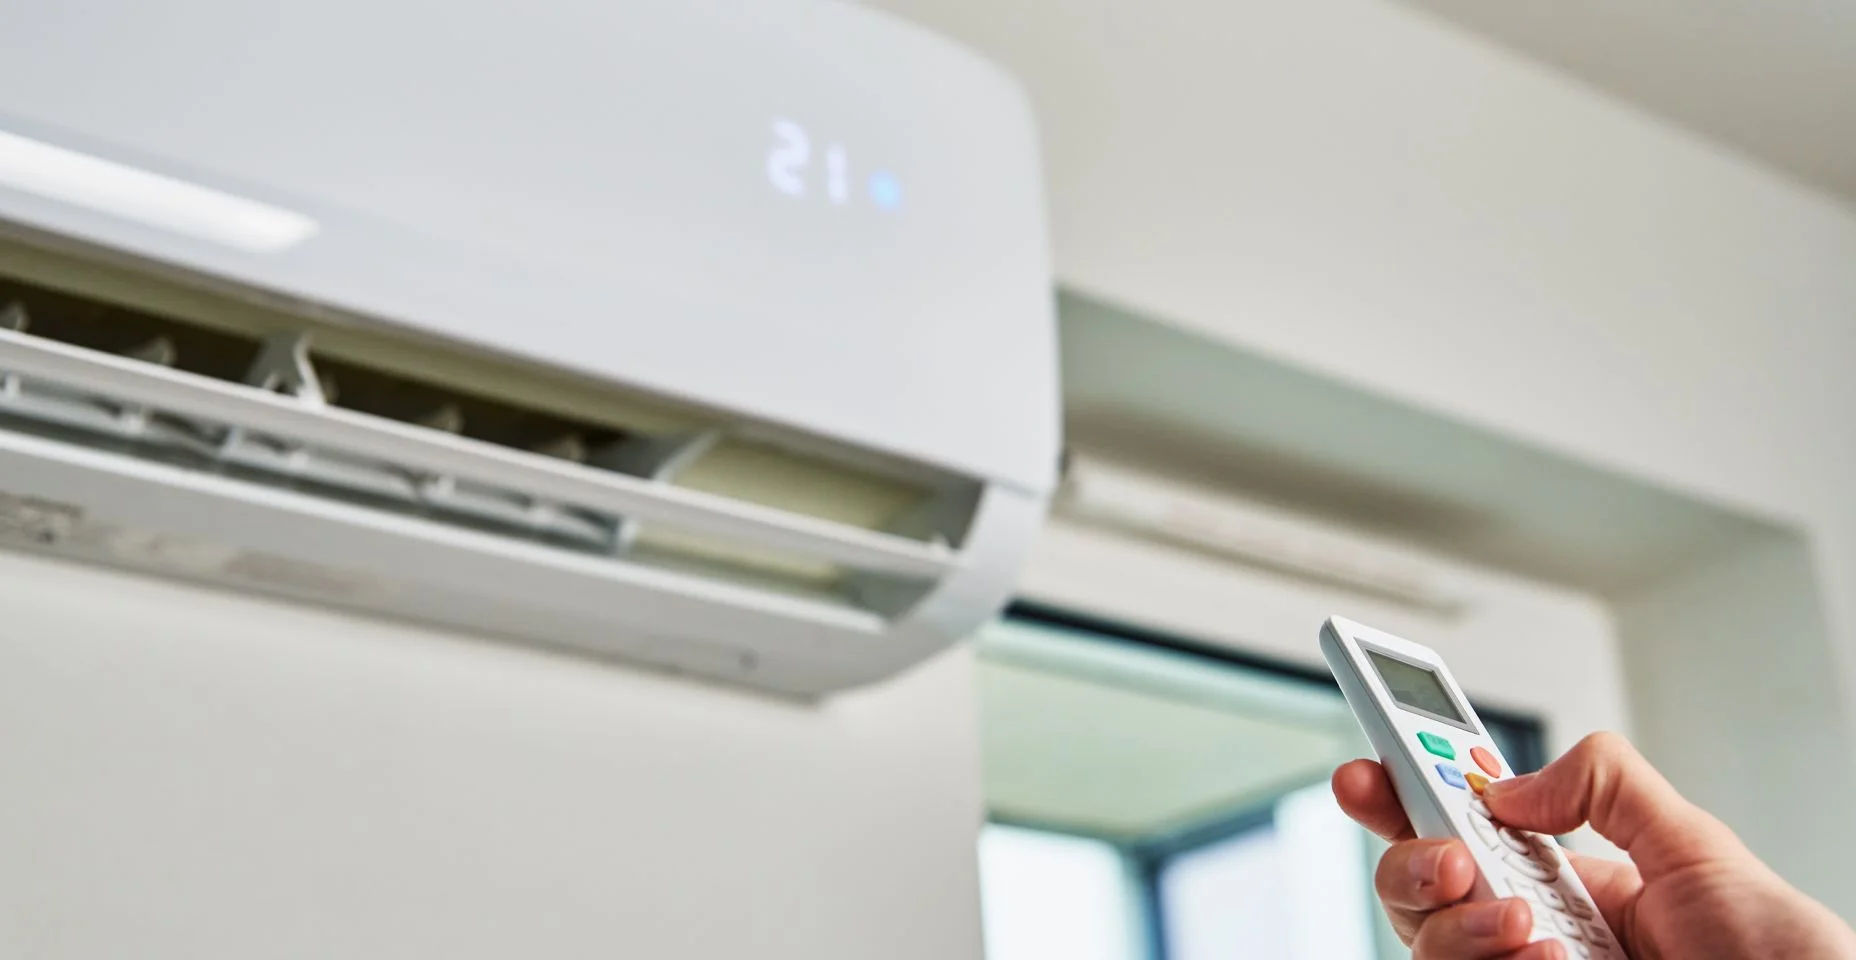 Temperatura de ajuste manual no ar condicionado com controle remoto, ar condicionado de trabalho para temperatura de conforto em casa no verão quente